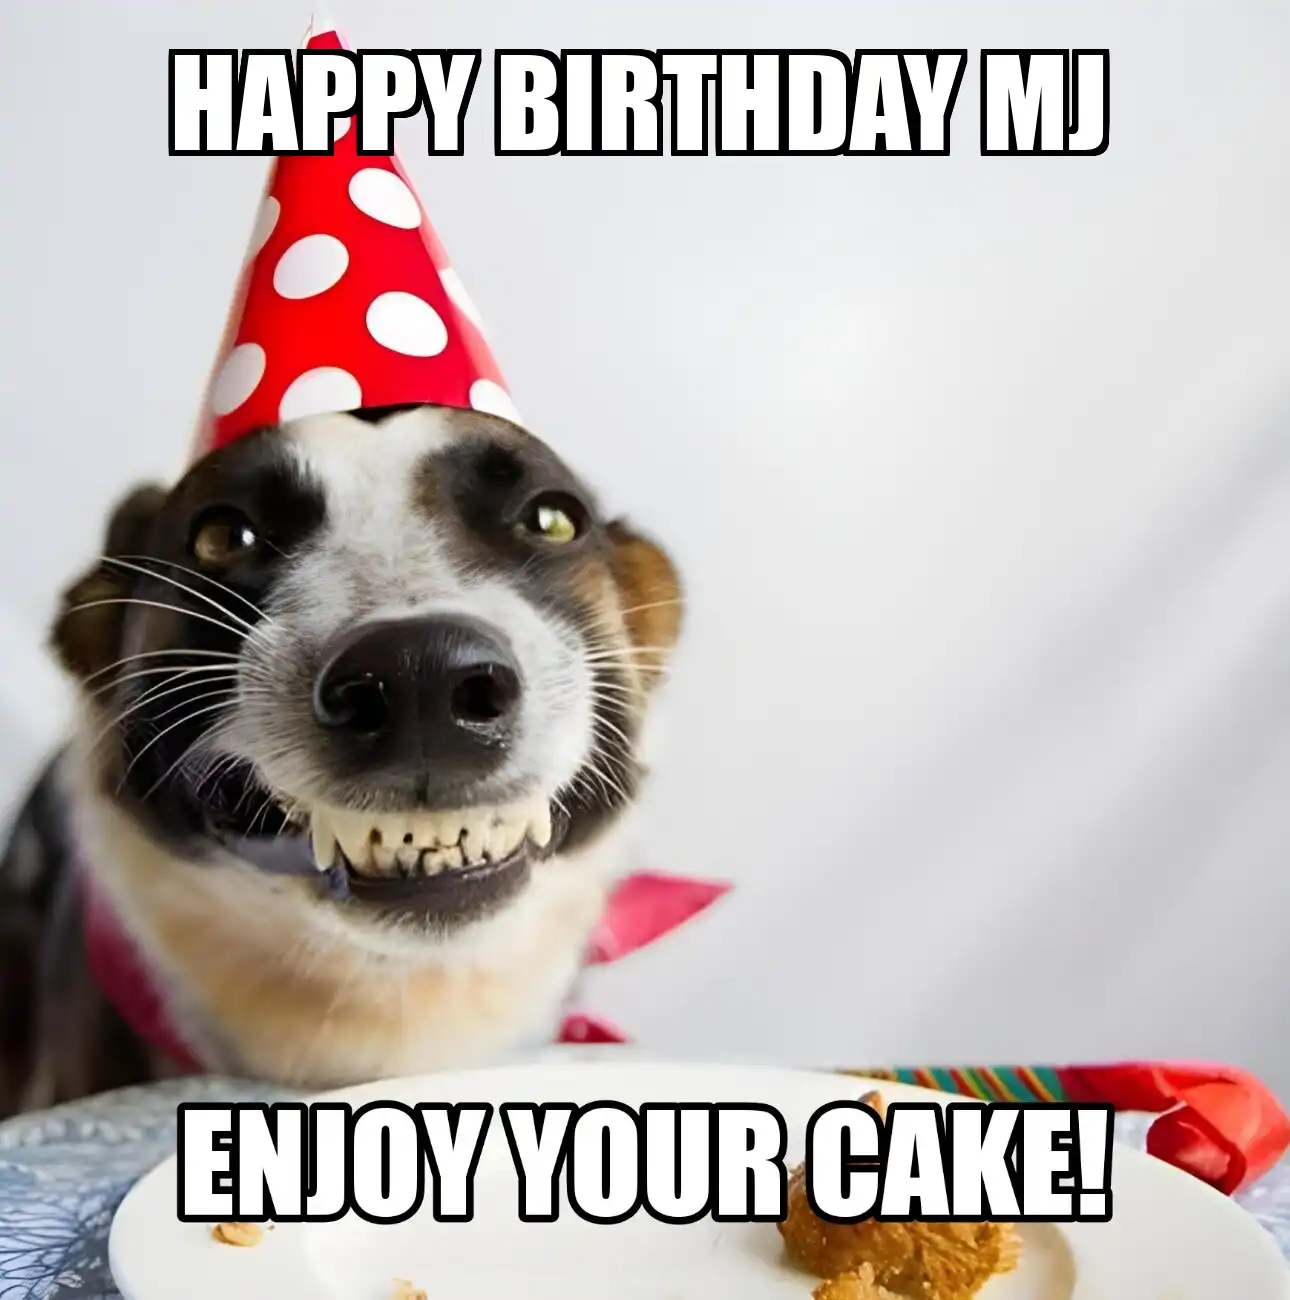 Happy Birthday Mj Enjoy Your Cake Dog Meme